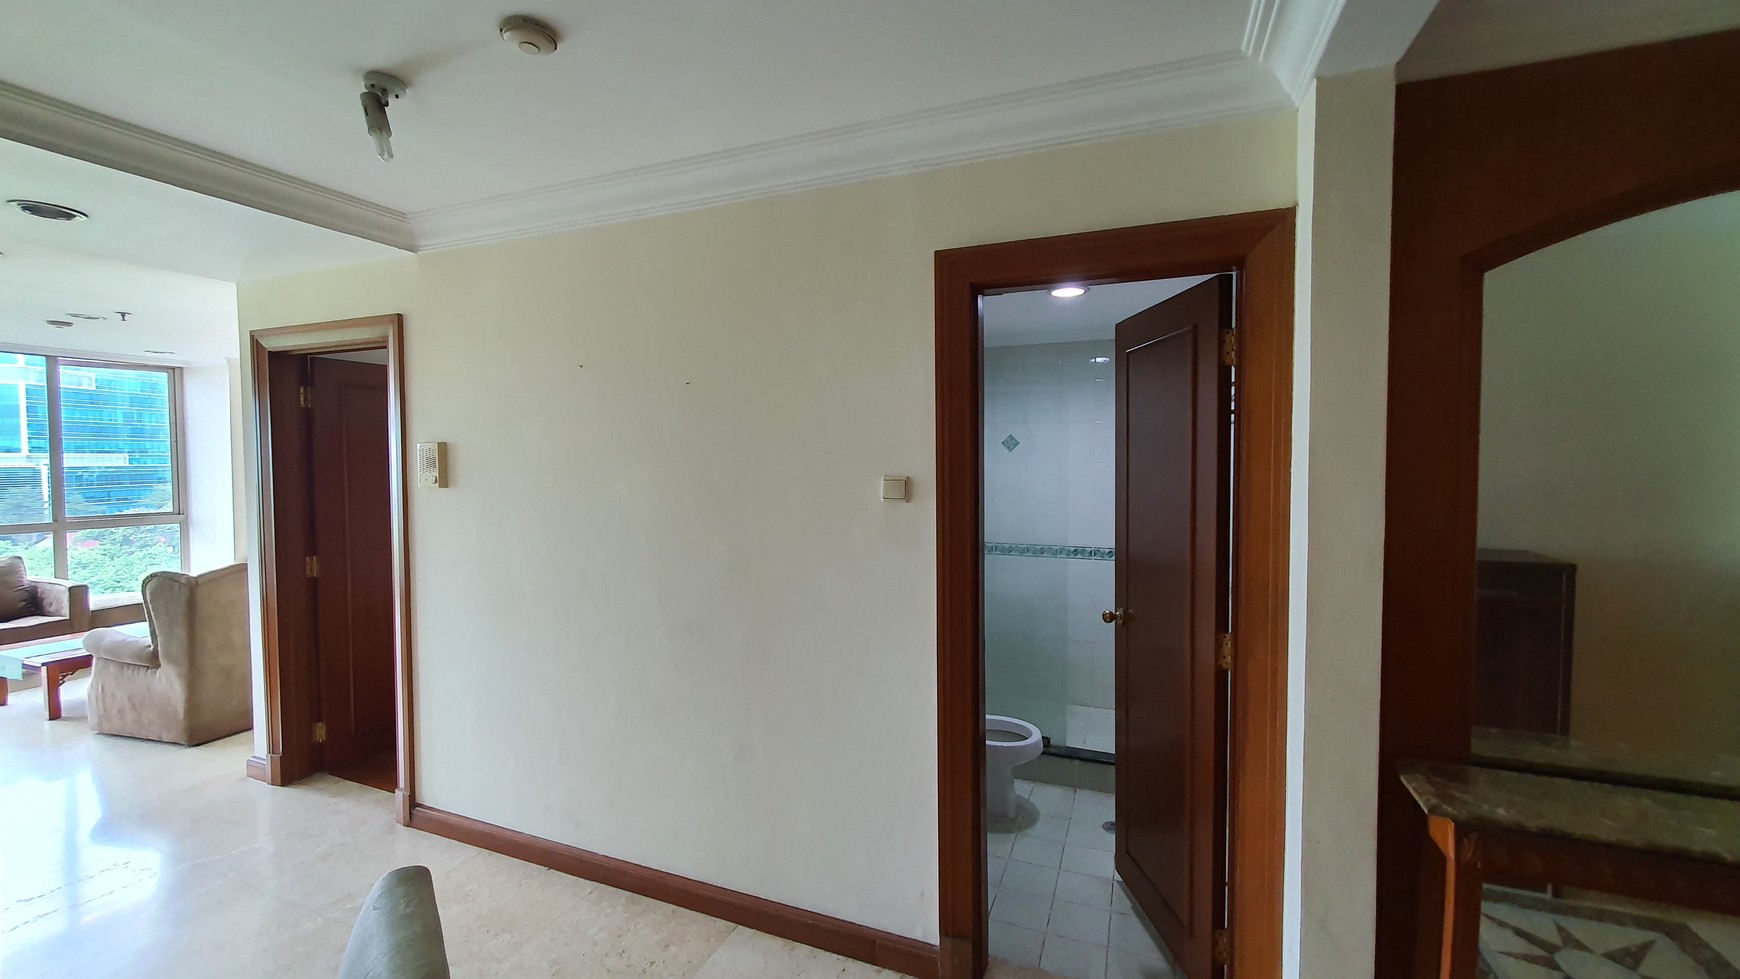 Apartemen 2 Bedroom Siap huni di Jakarta Selatan.